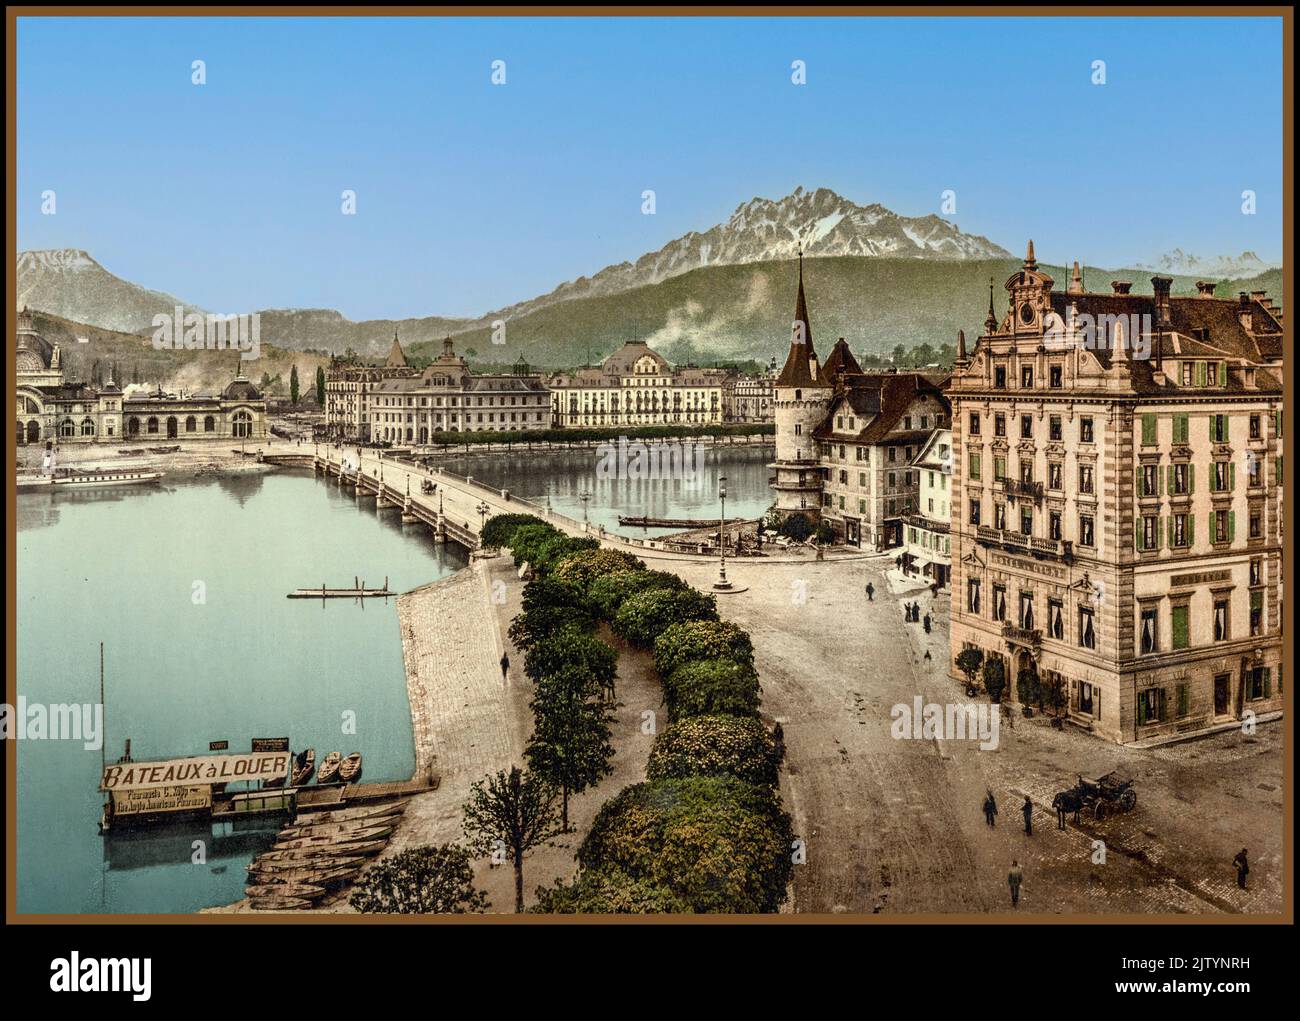 1900 Luzern mit neuer Brücke und Pilatus, Hotel de Cygne im Vordergrund Schweiz historische Photochrom Reise Postkarte Farbtechnik Stockfoto